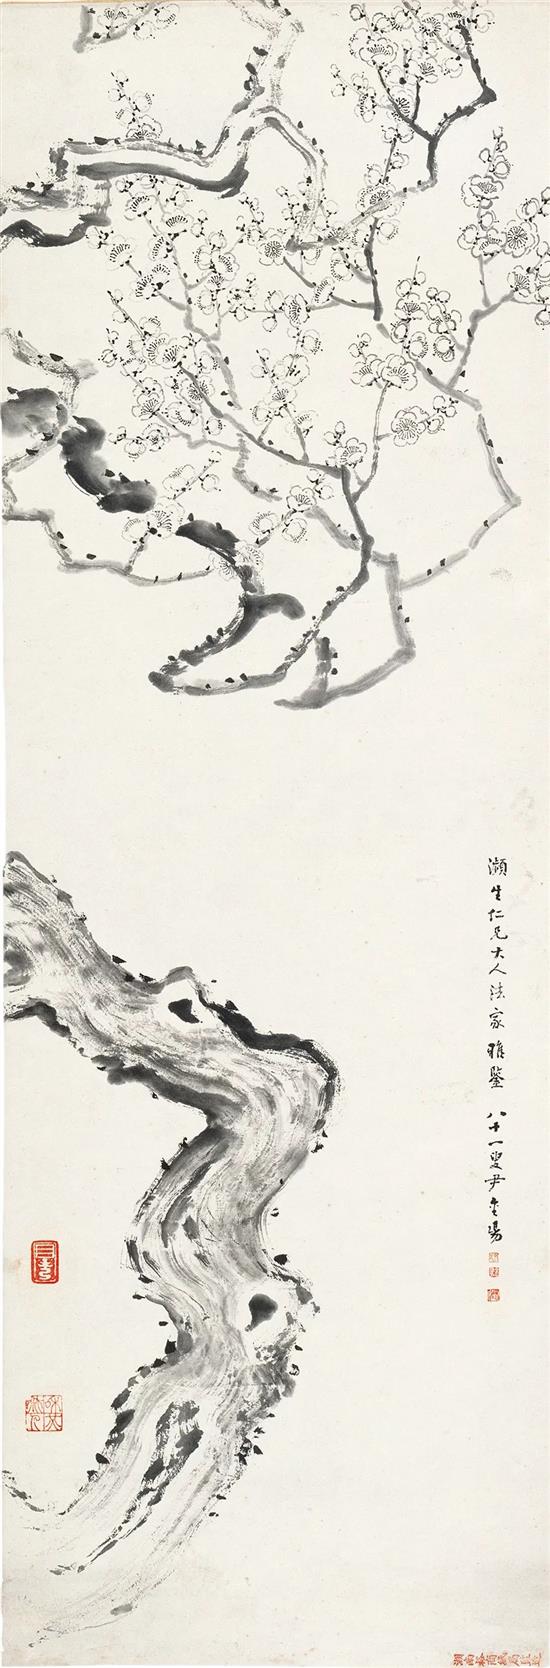 梅图 尹和伯 无年款 131×35.5cm 纸本水墨 北京画院藏